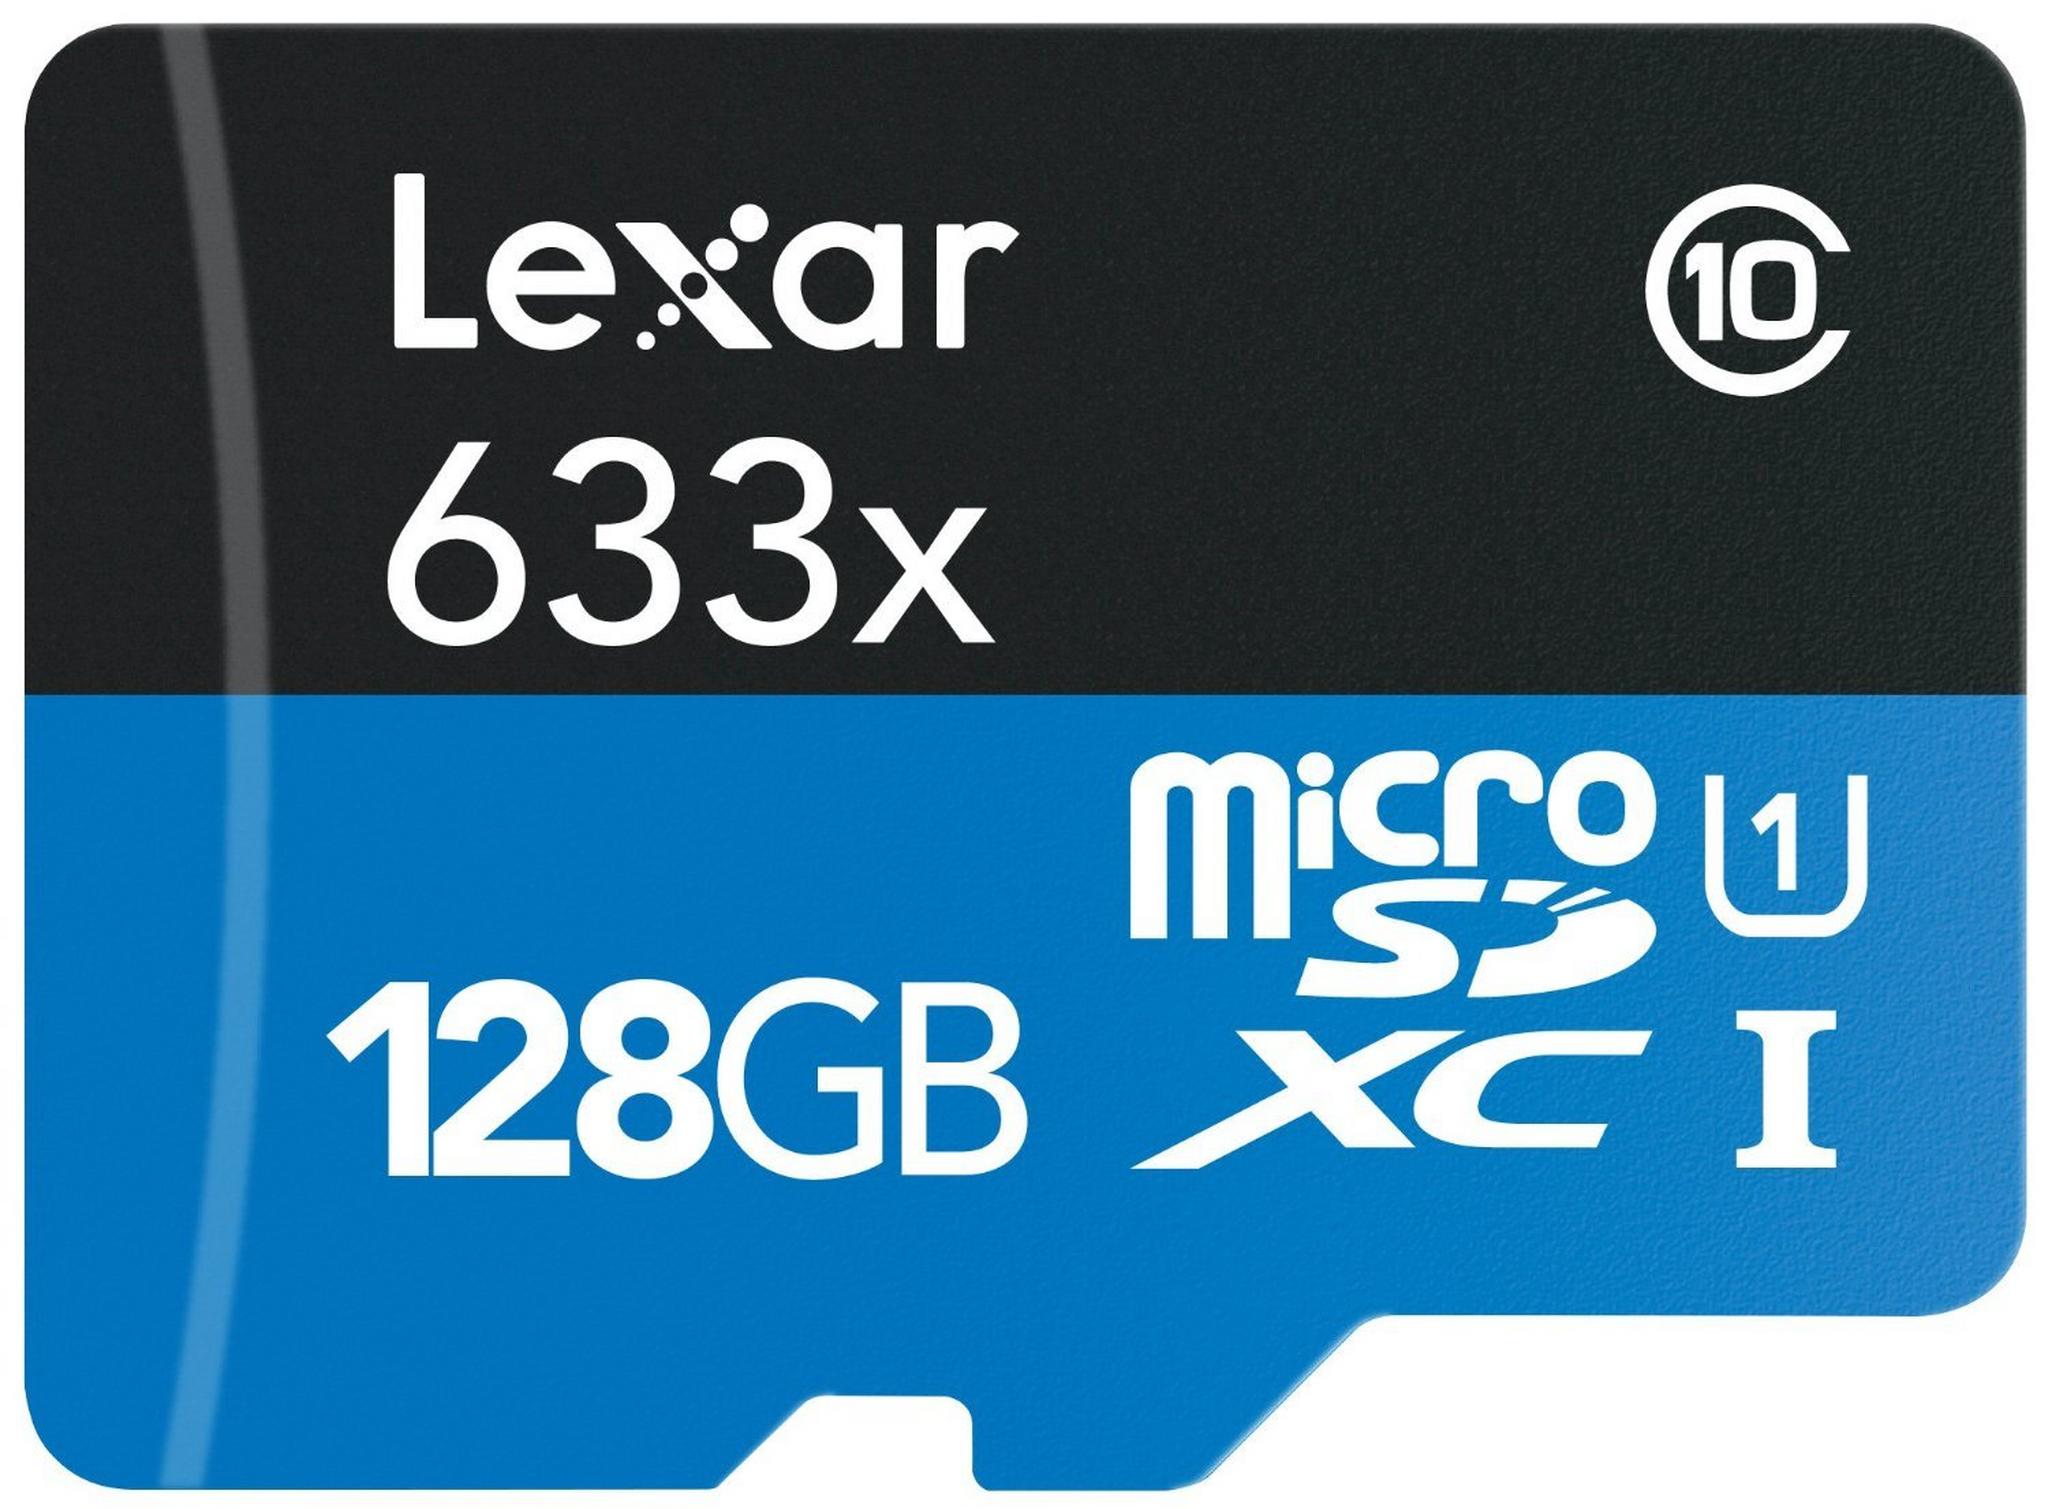 بطاقة ذاكرة مايكرو اس دي اتش سي/ مايكرو اس دي أكس سي عالية الأداء من ليكسر- ١٢٨ جيجابايت